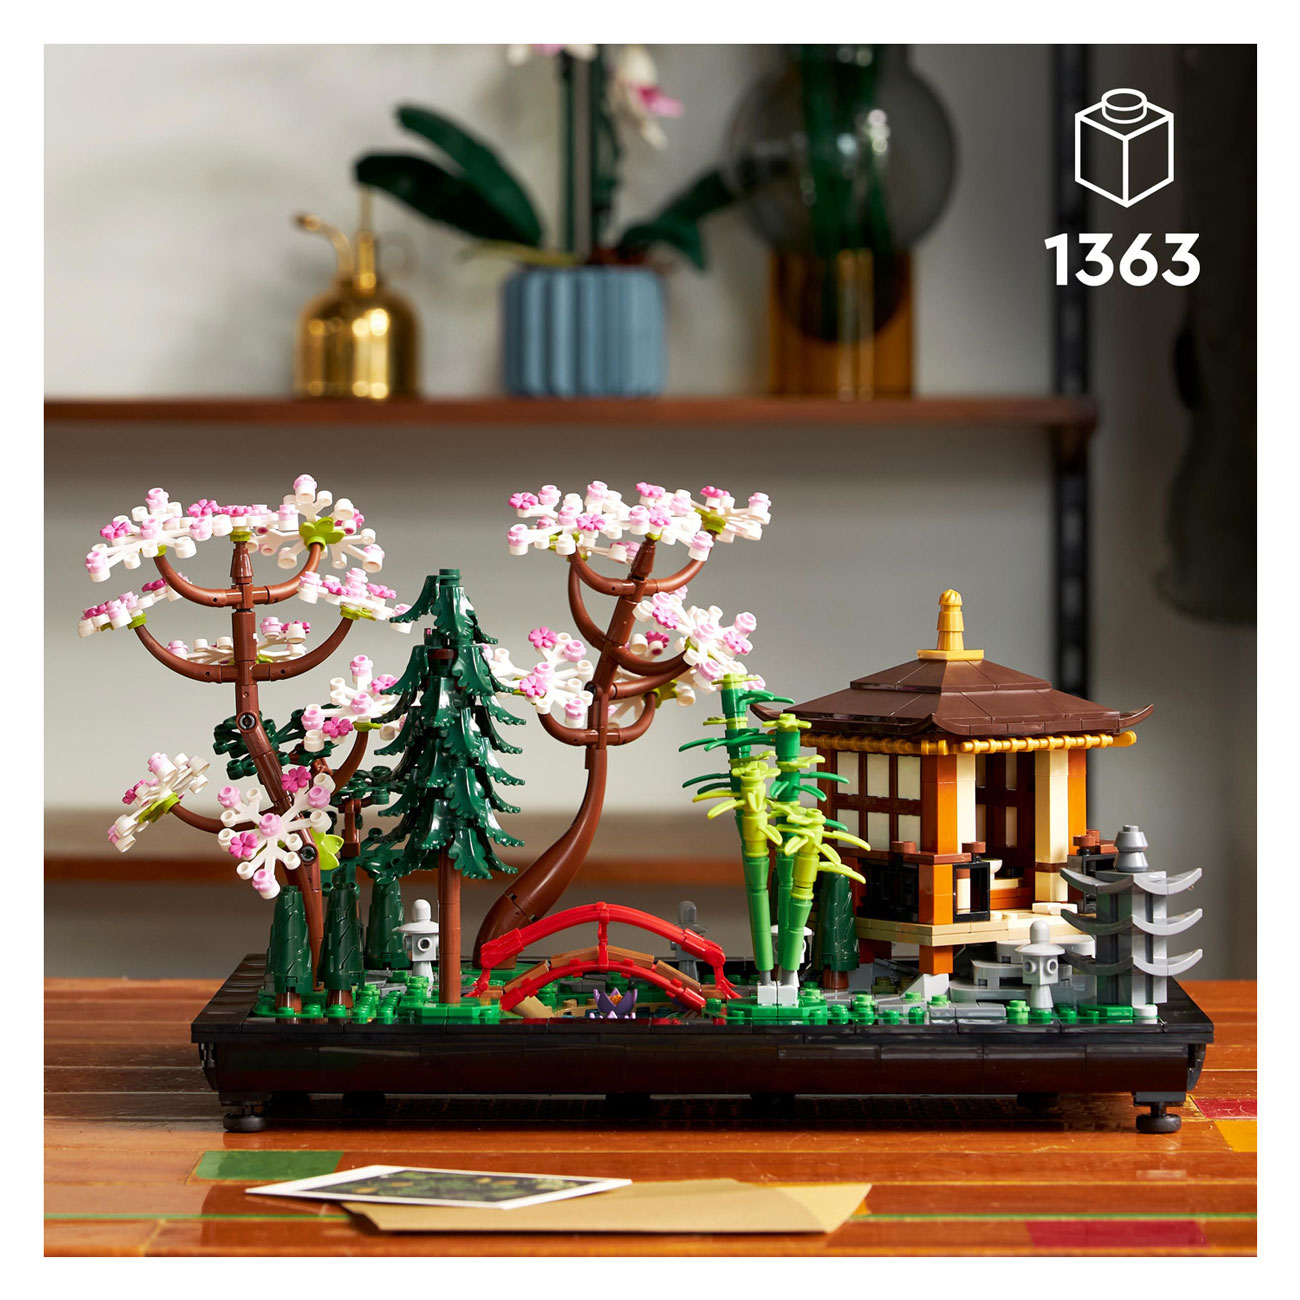 10315 LEGO ICONS Entspannender Garten